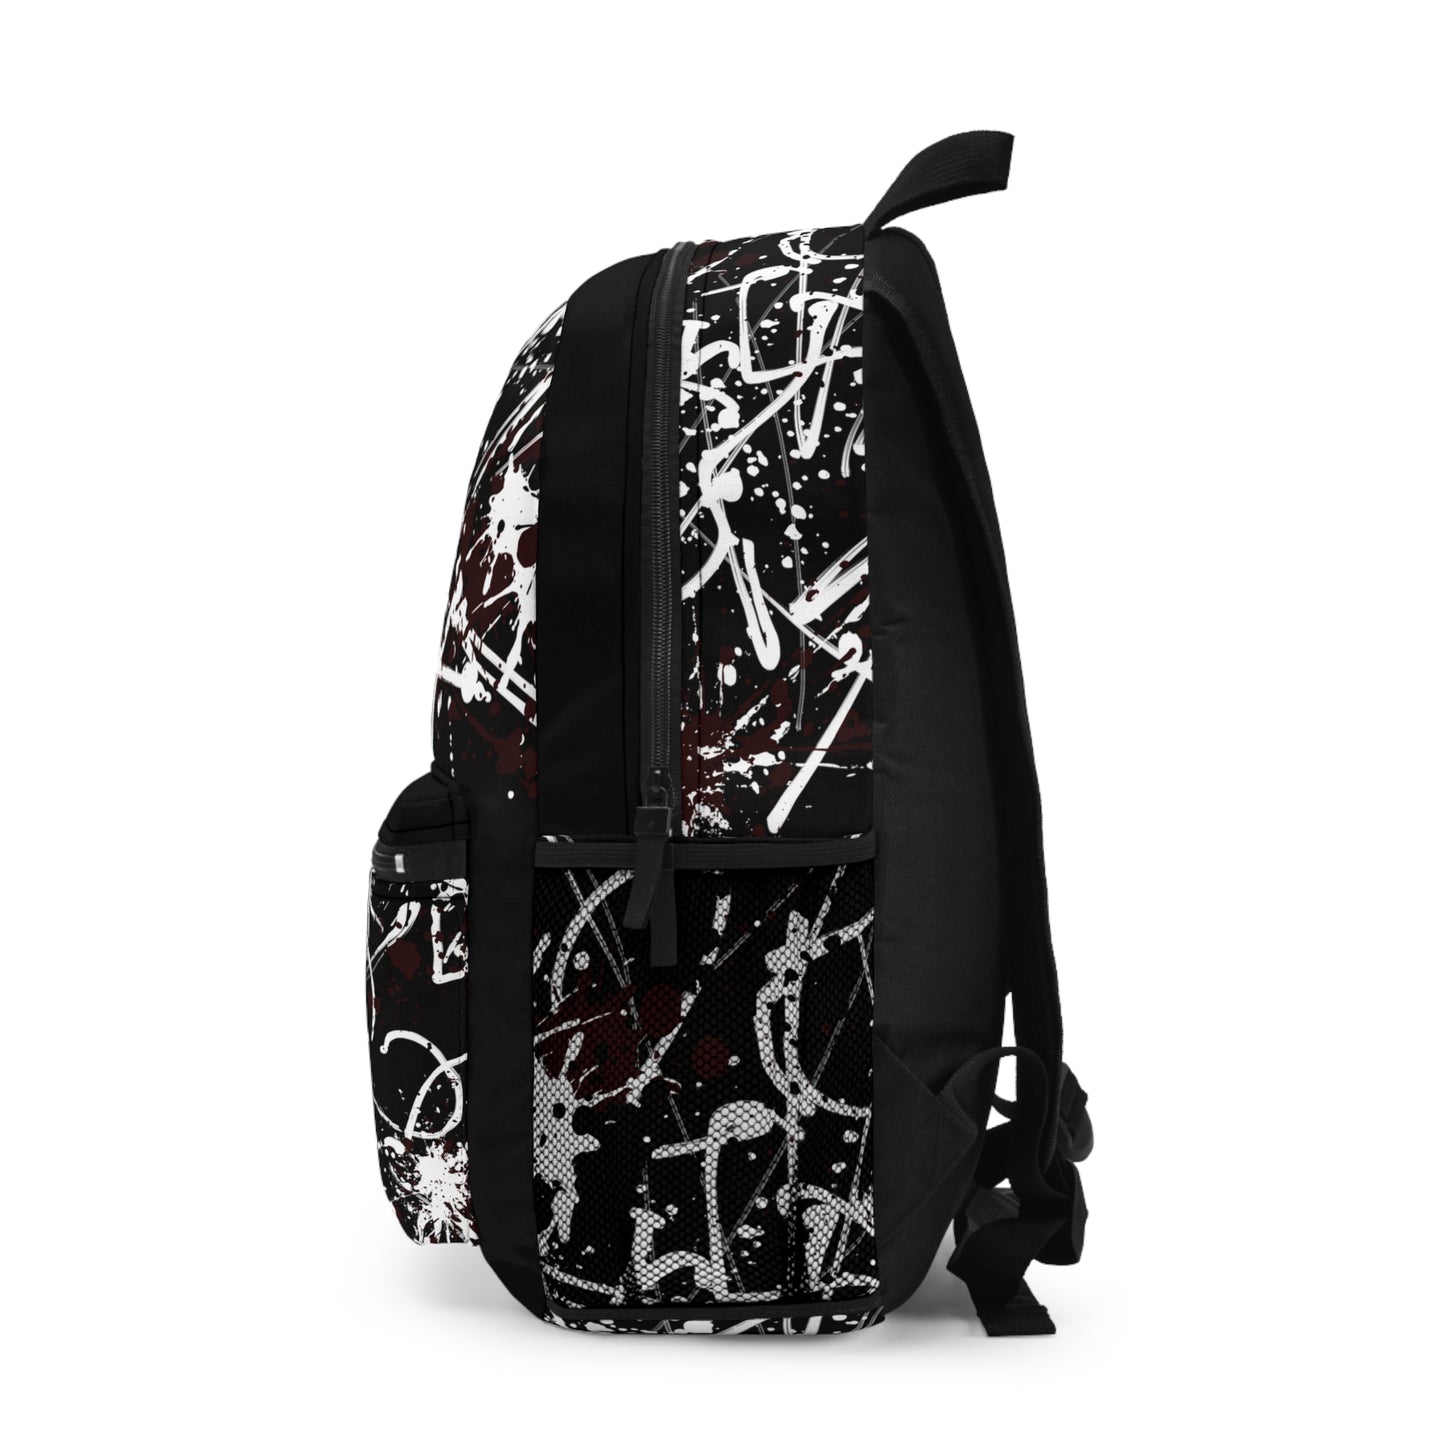 Warrior Backpack